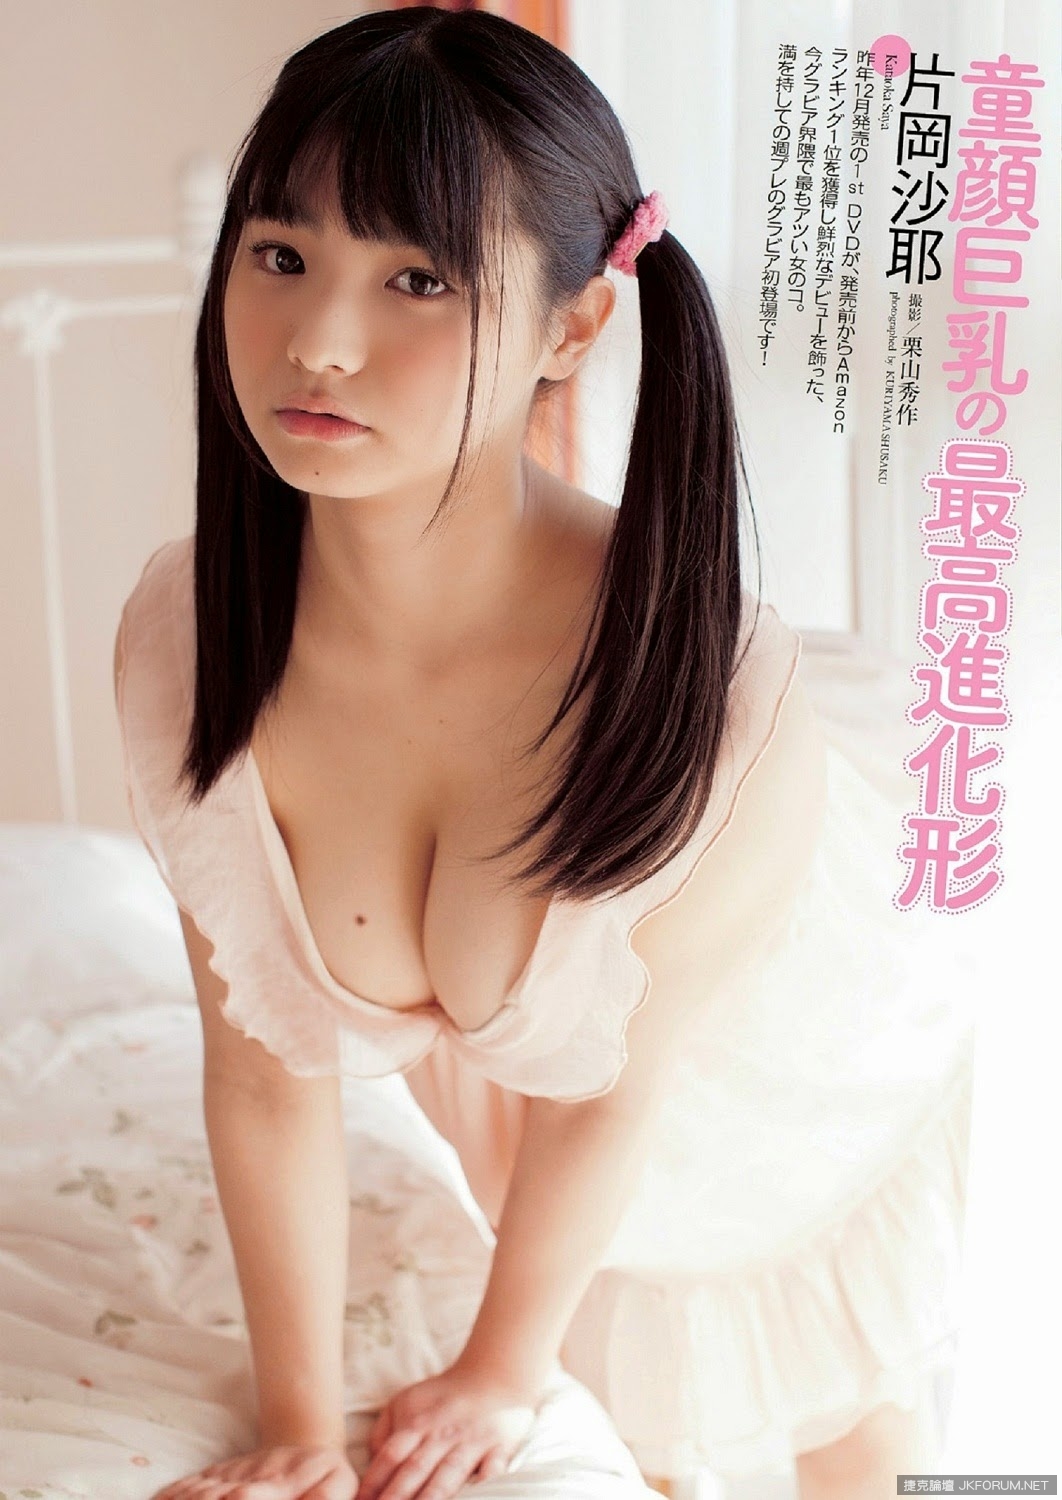 Kataoka Saya 片岡沙耶 Weekly Playboy March 2014 Photos.jpg